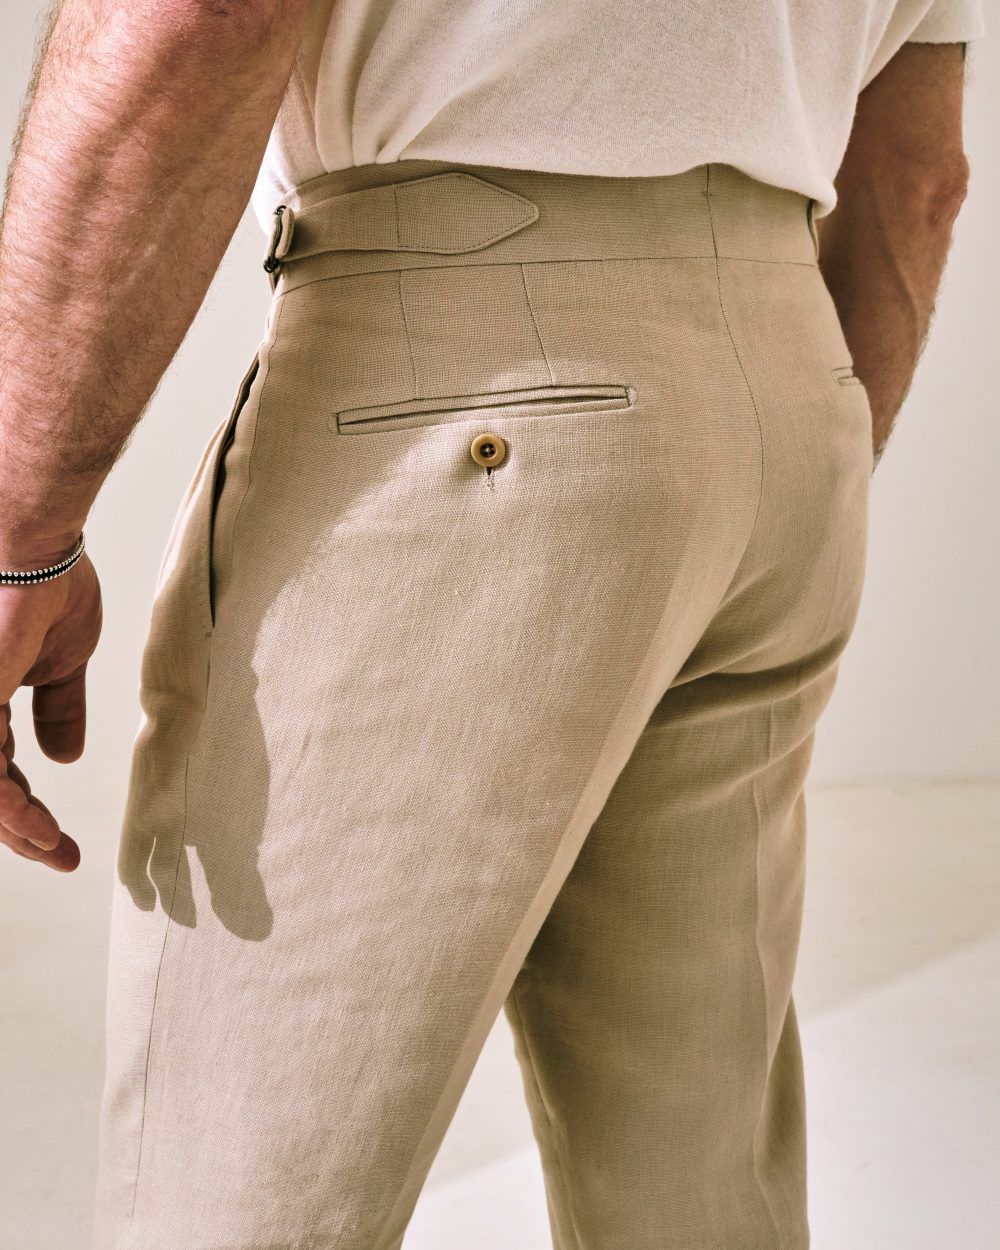 S4 Two Pleats Cut Trousers / Monte-Carlo Linen